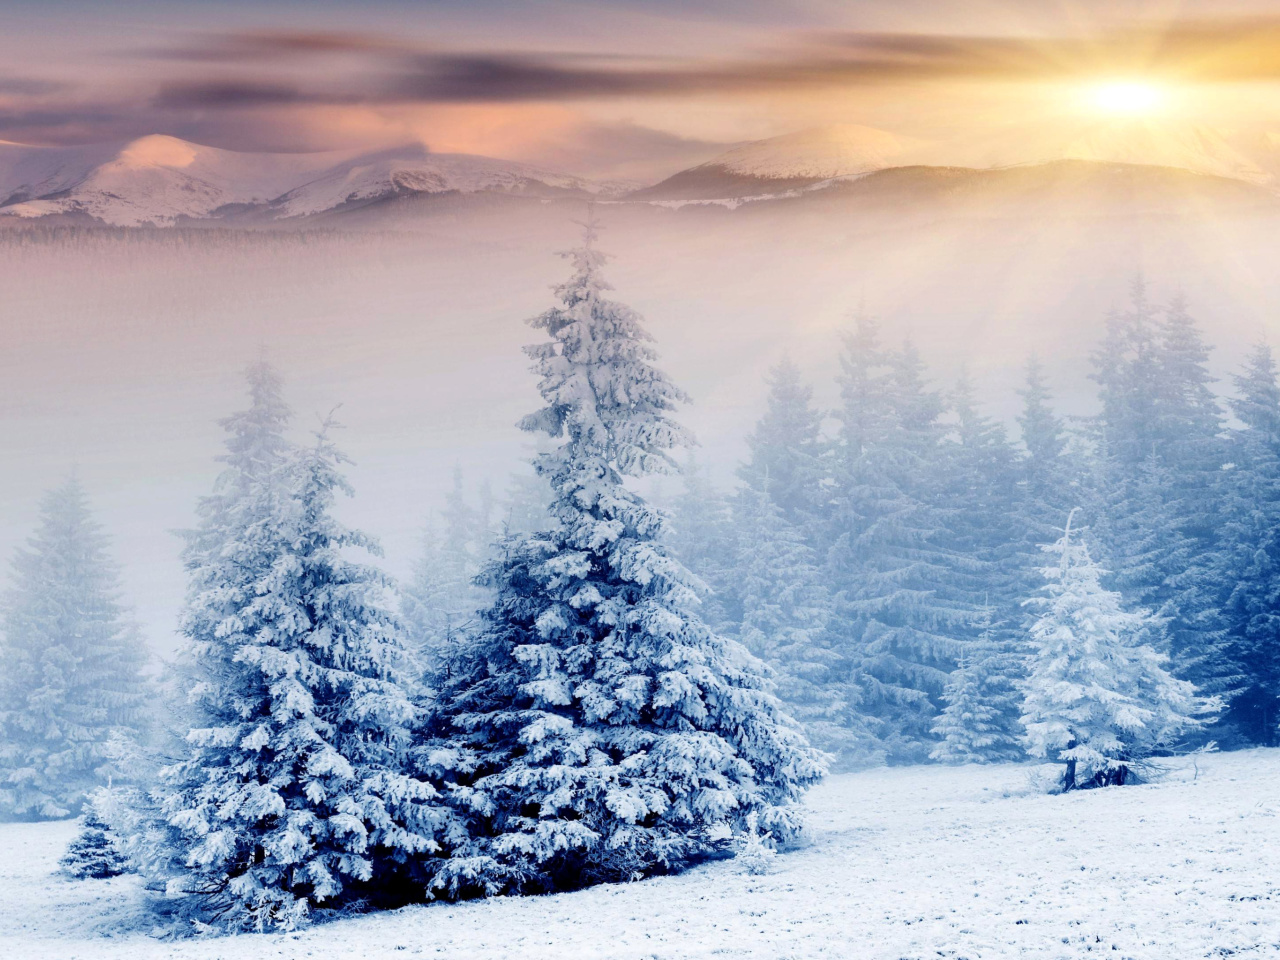 Sfondi Winter Nature in Prisma Editor 1280x960